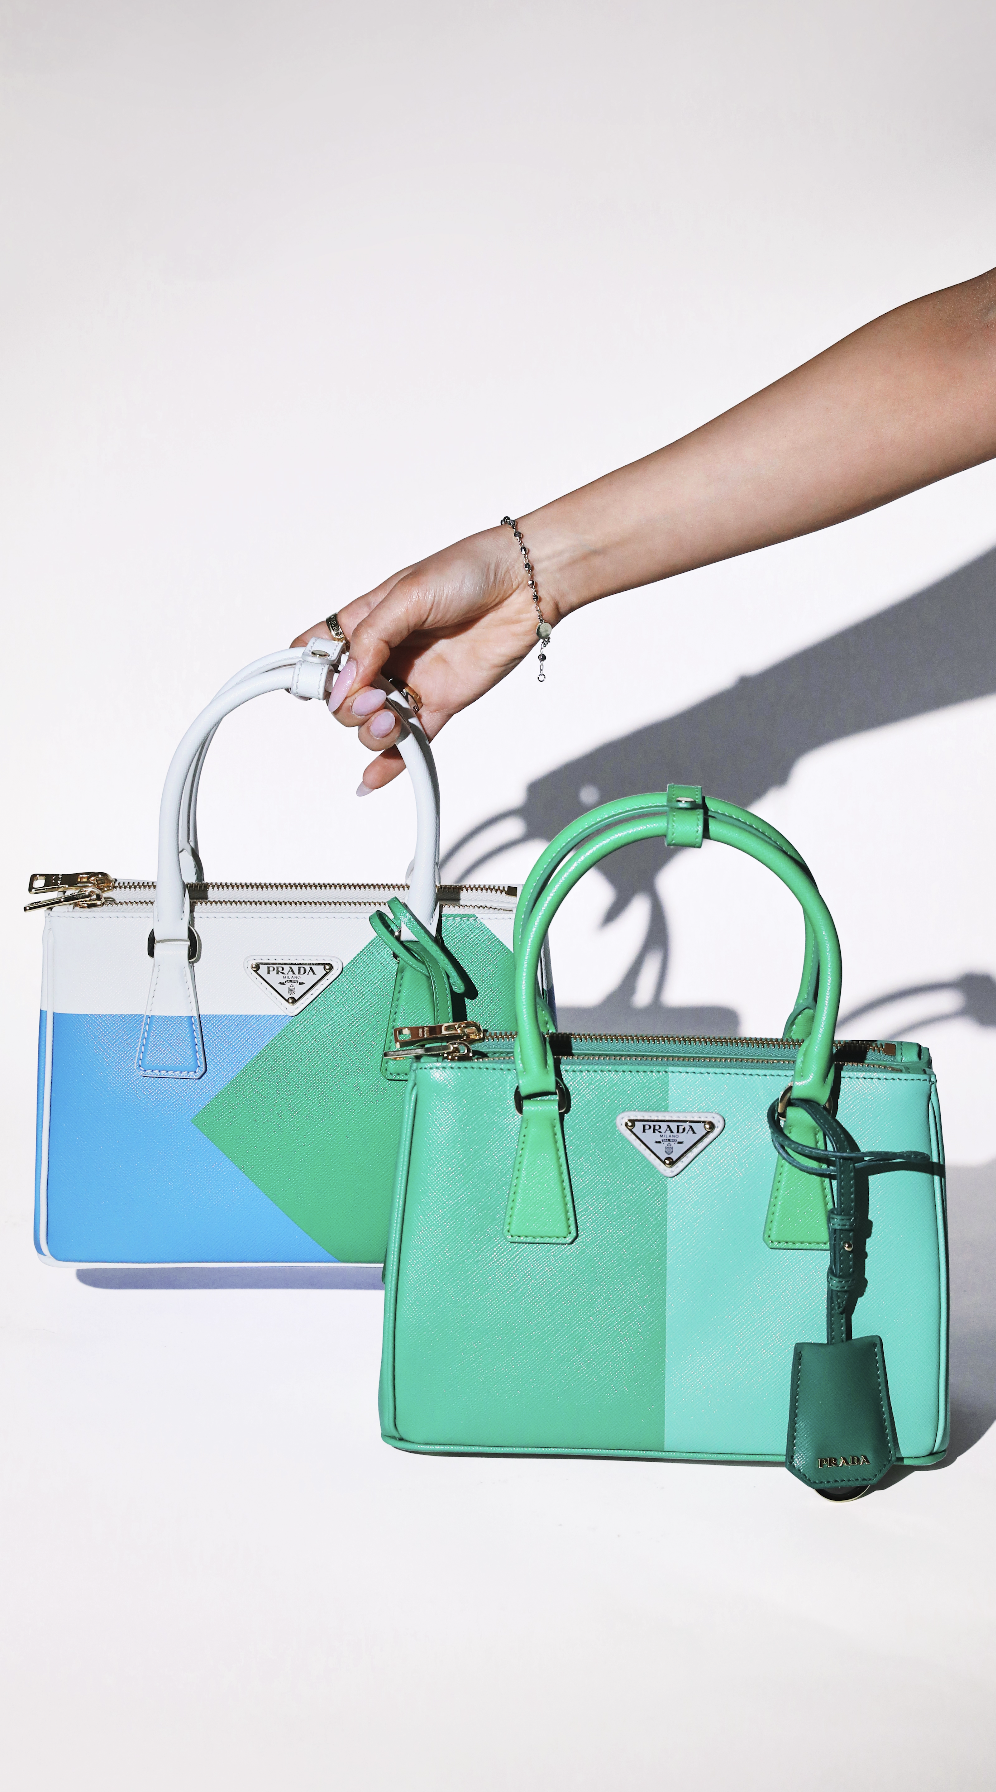 Celebrating Prada's Galleria Bag